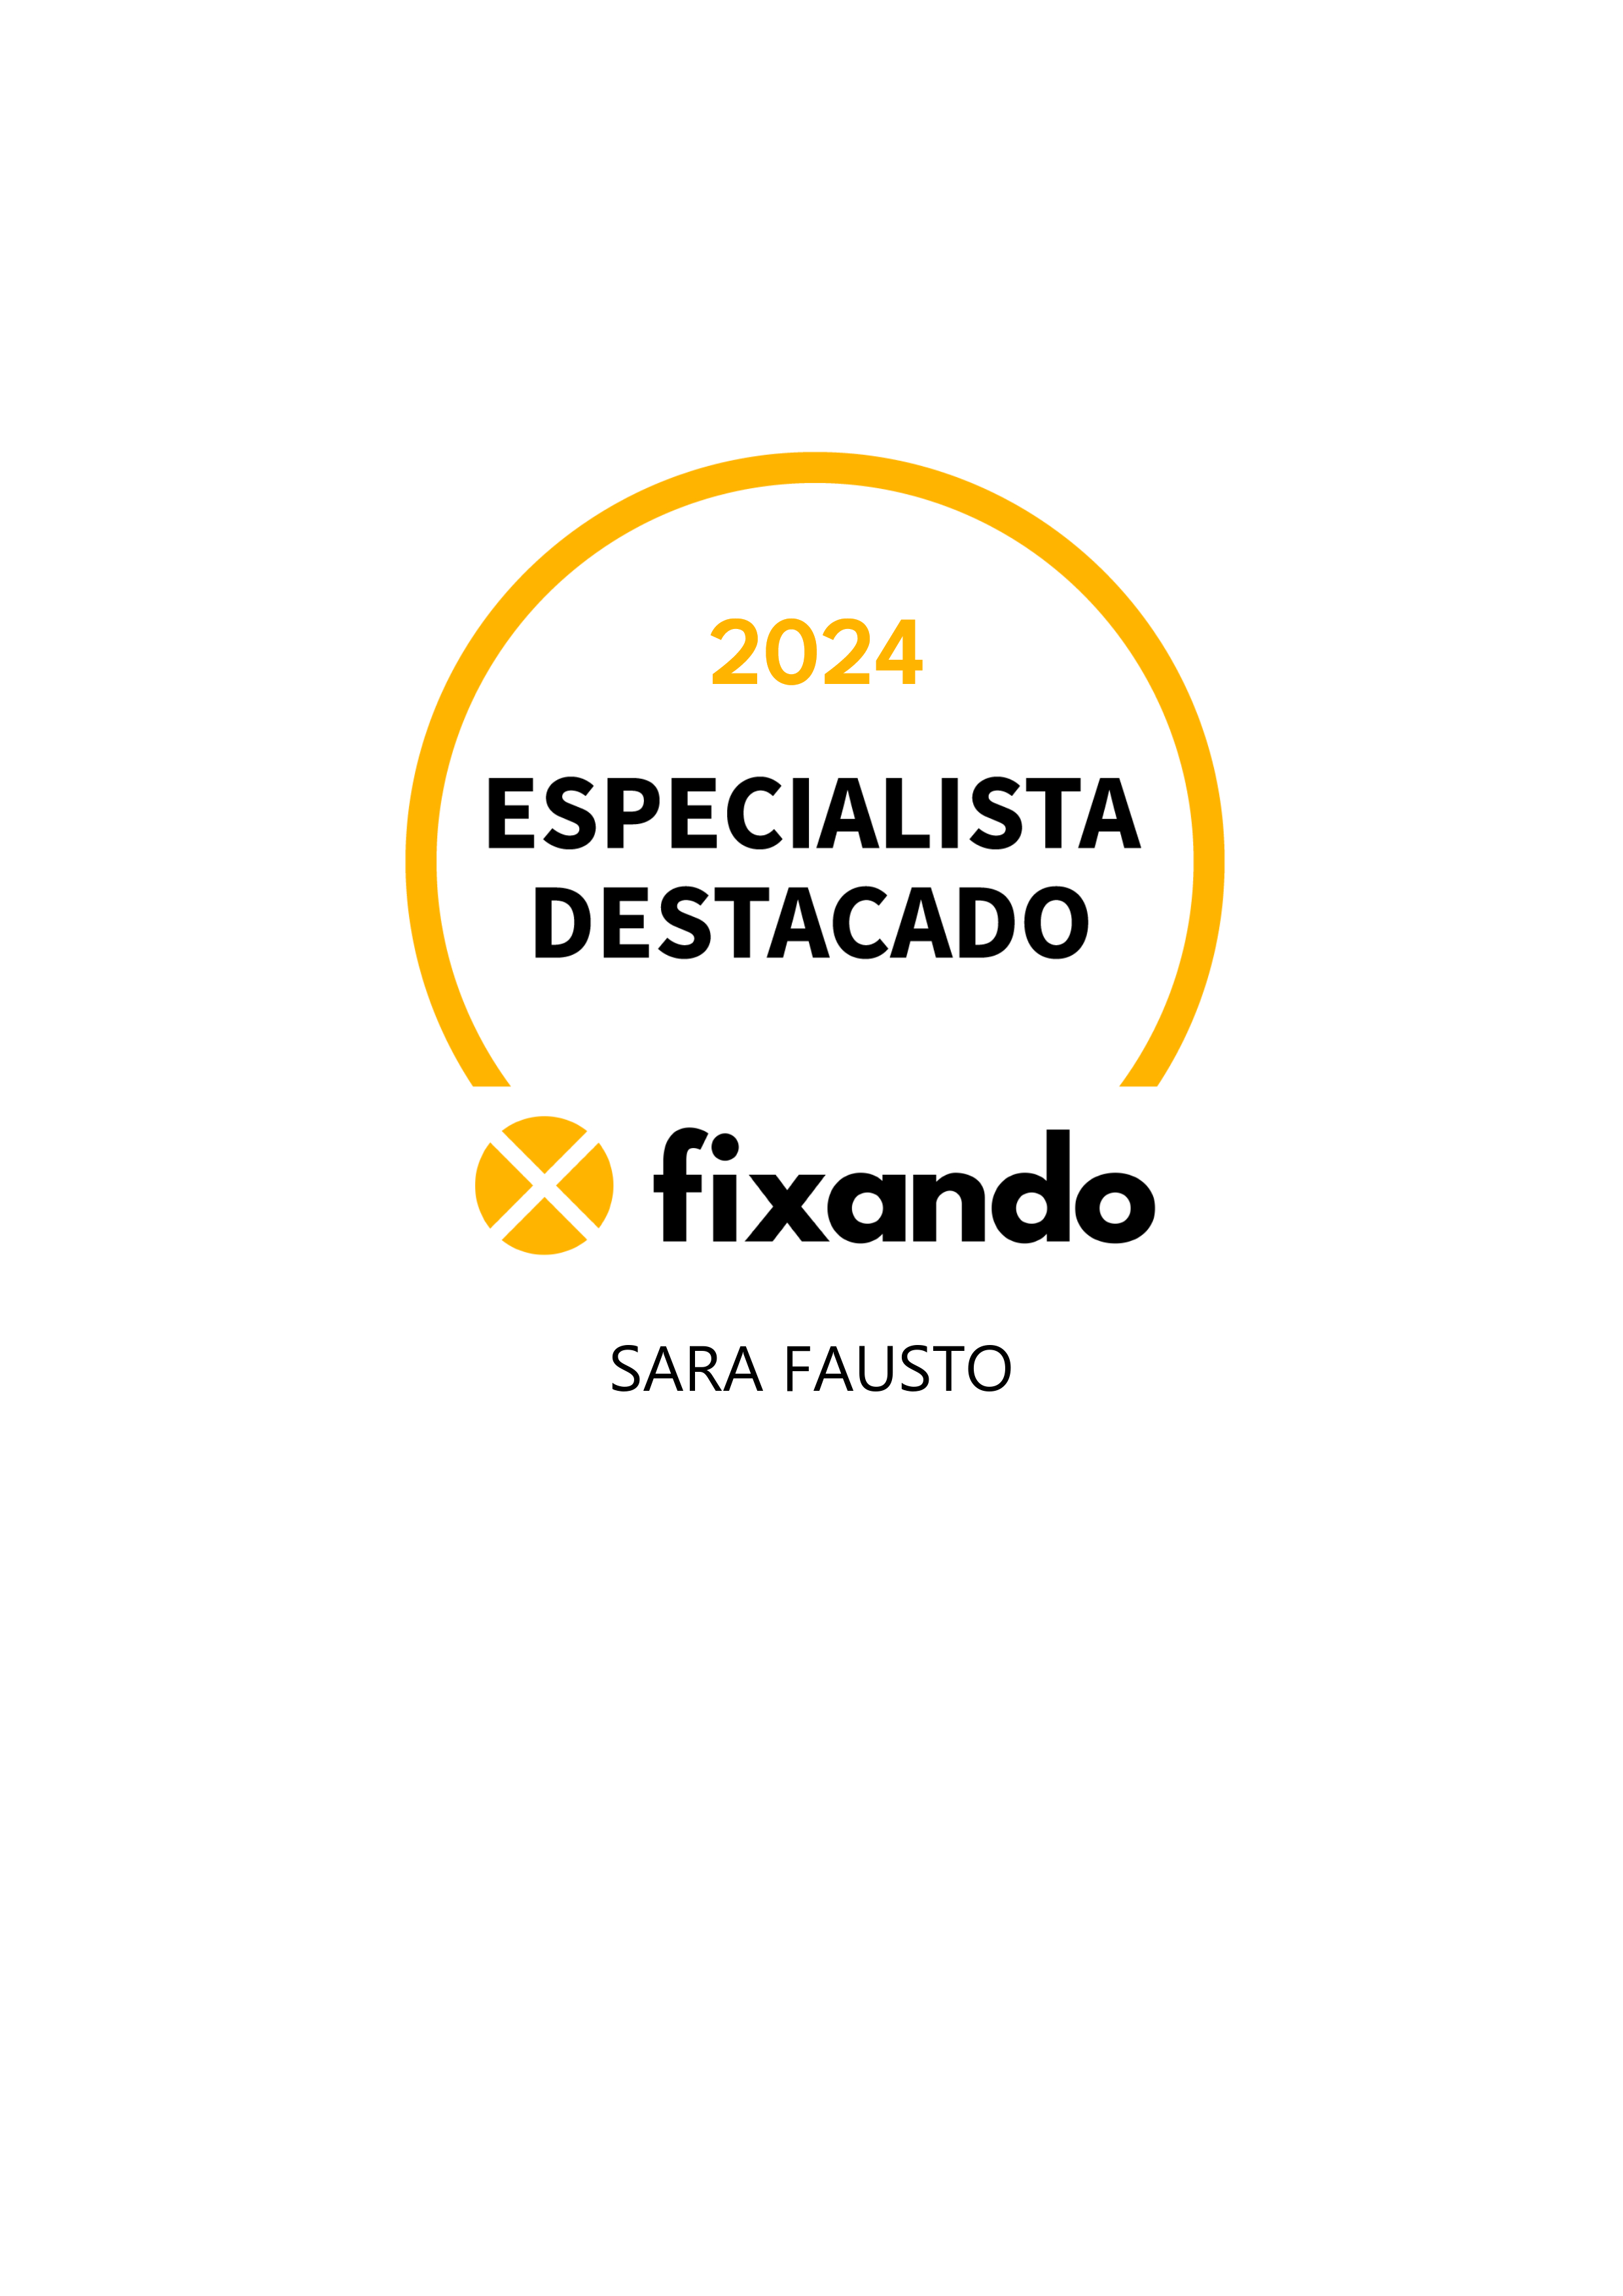 Sara Fausto - Lagos - Contabilidade e Fiscalidade